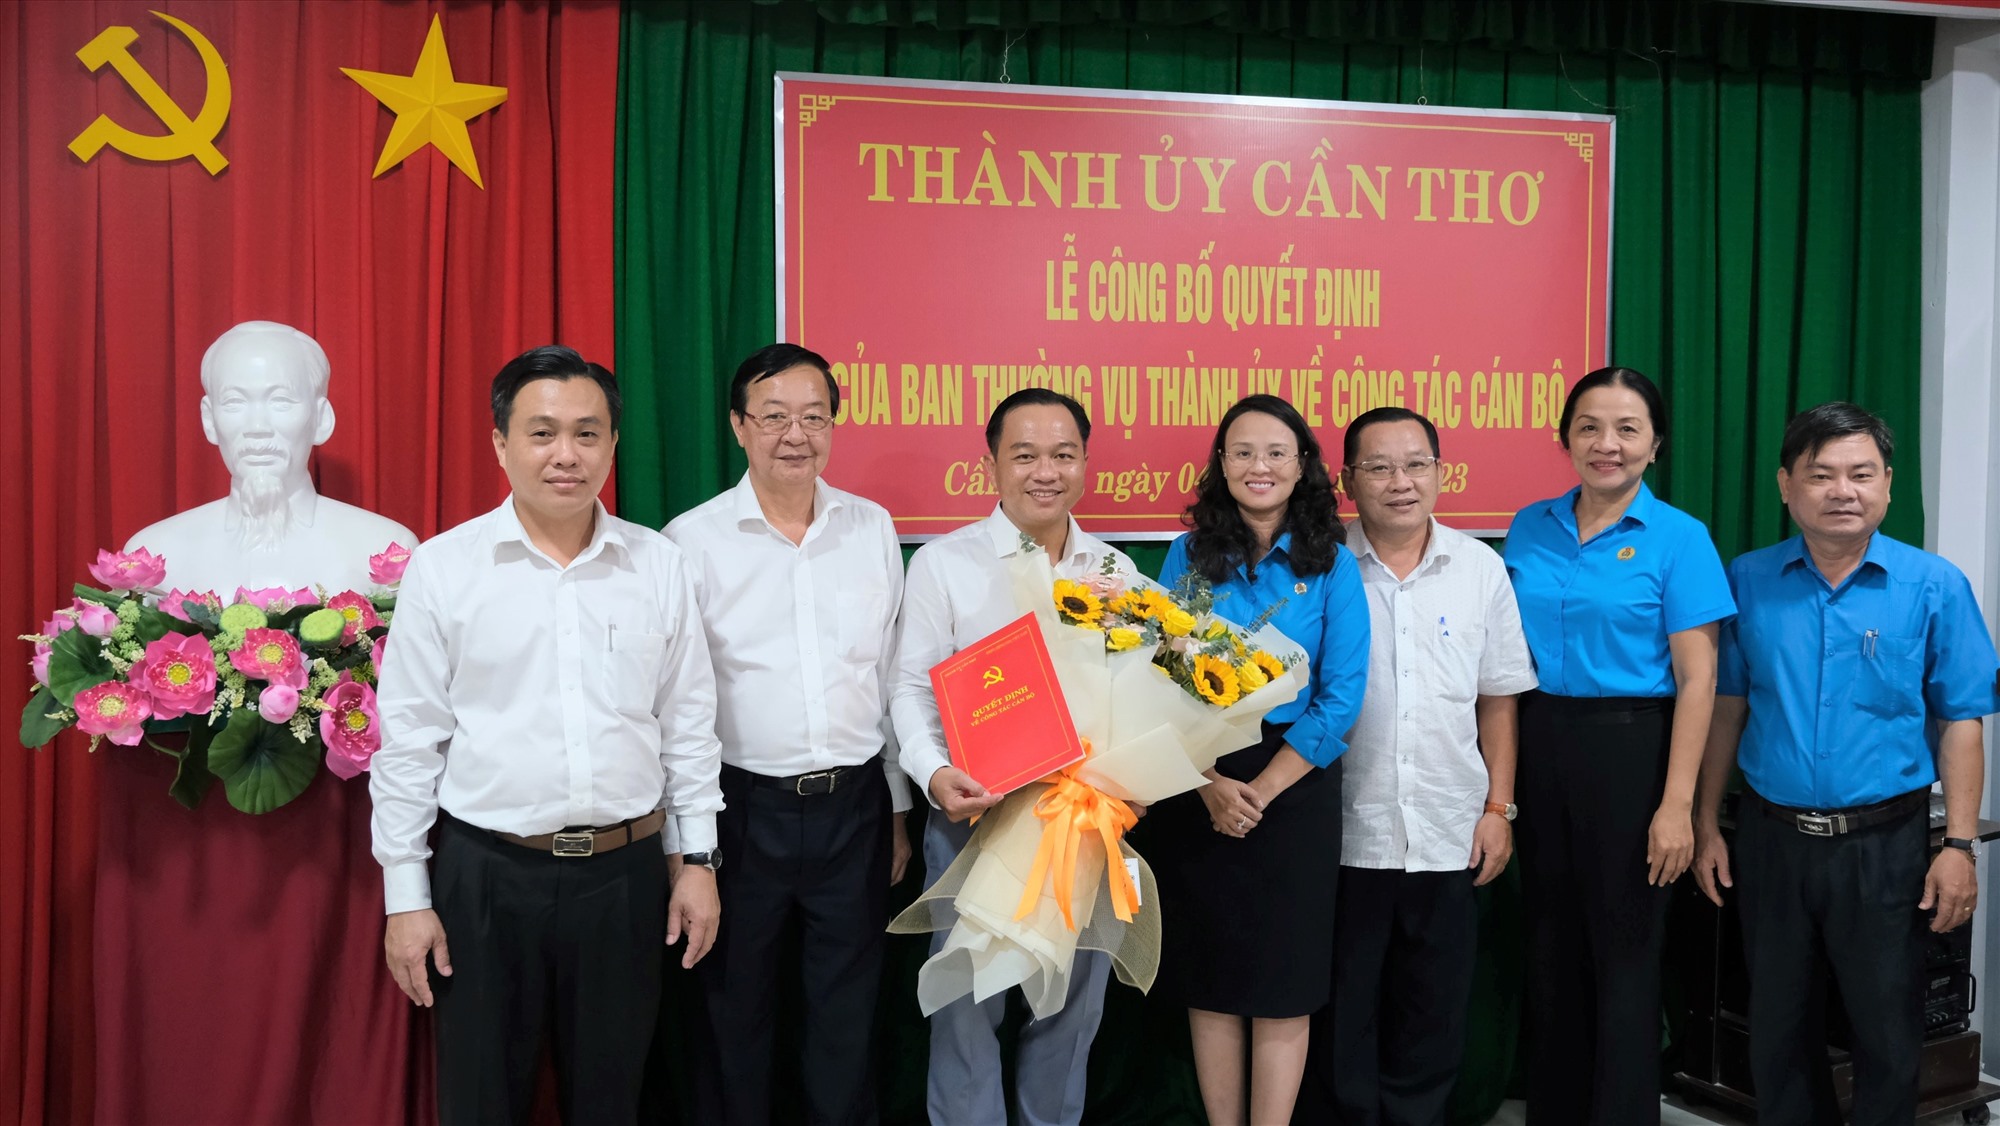 Đồng chí Nguyễn Ngọc Tấn (đứng giữa) nhận quyết định giữ chức Phó chủ tịch LĐLĐ TP Cần Thơ. Ảnh: Phong Linh